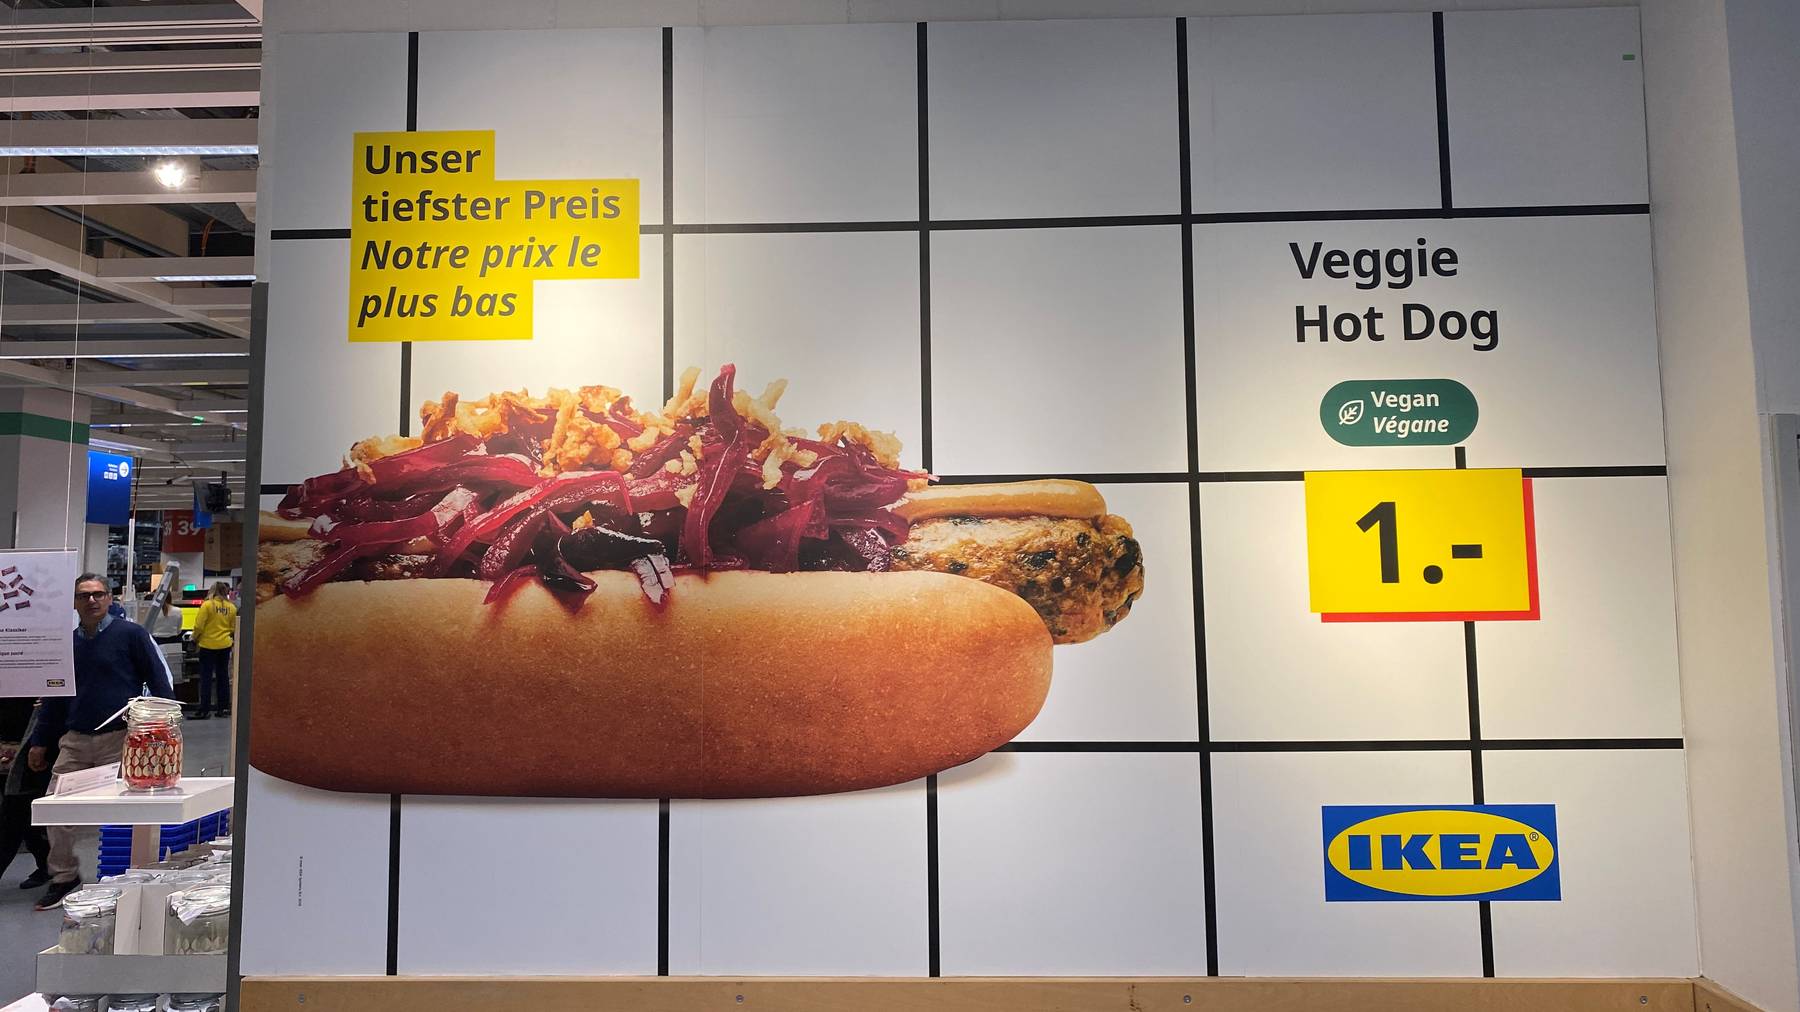 Der Vegi-Hotdog kostet nach wie vor 1 Franken.